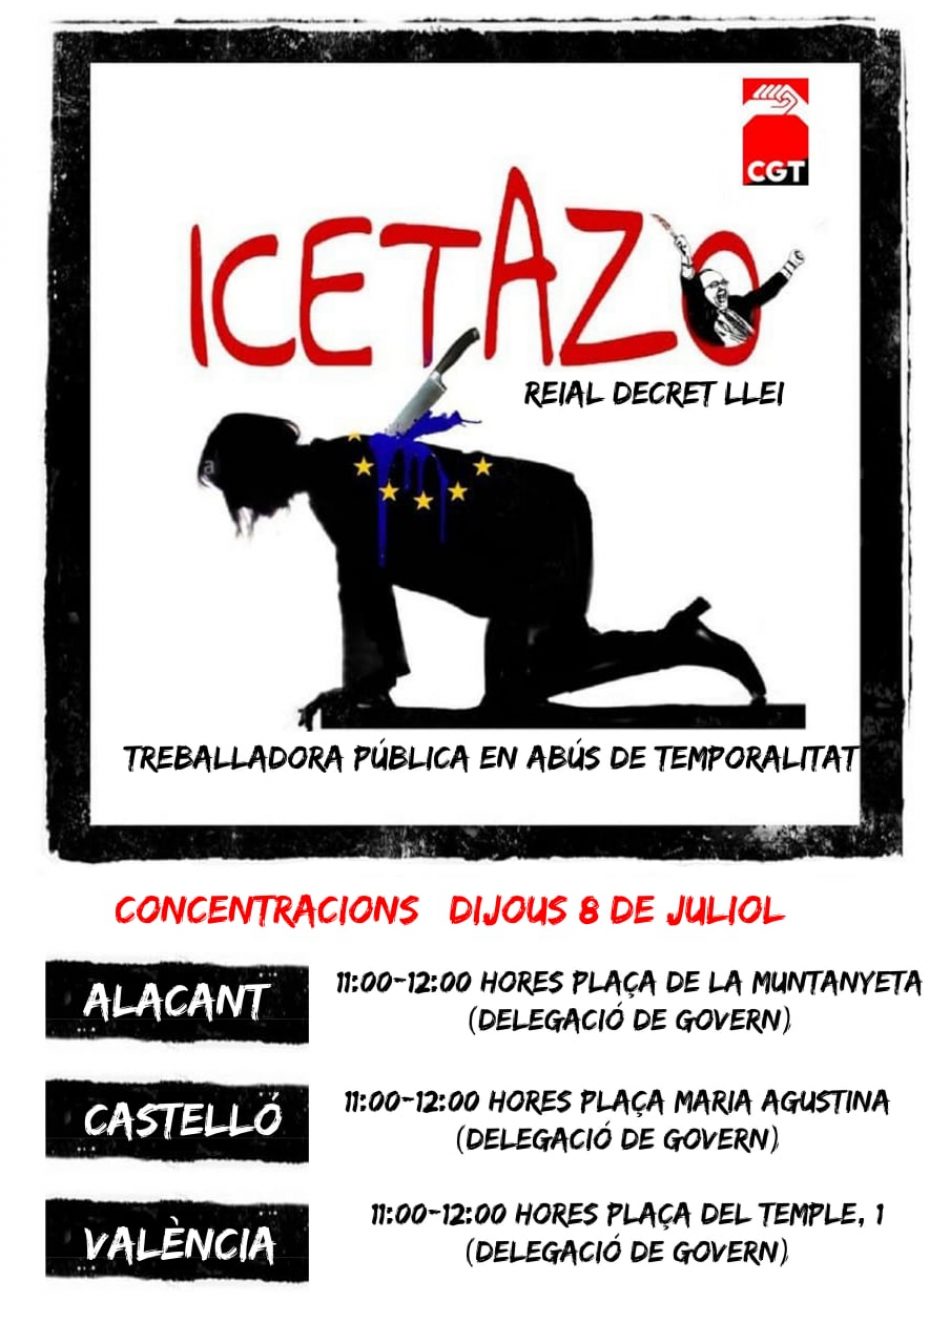 Convocadas concentraciones en el País Valencià «contra el icetazo, por la consolidación del personal temporal e interino de las Administraciones Públicas”